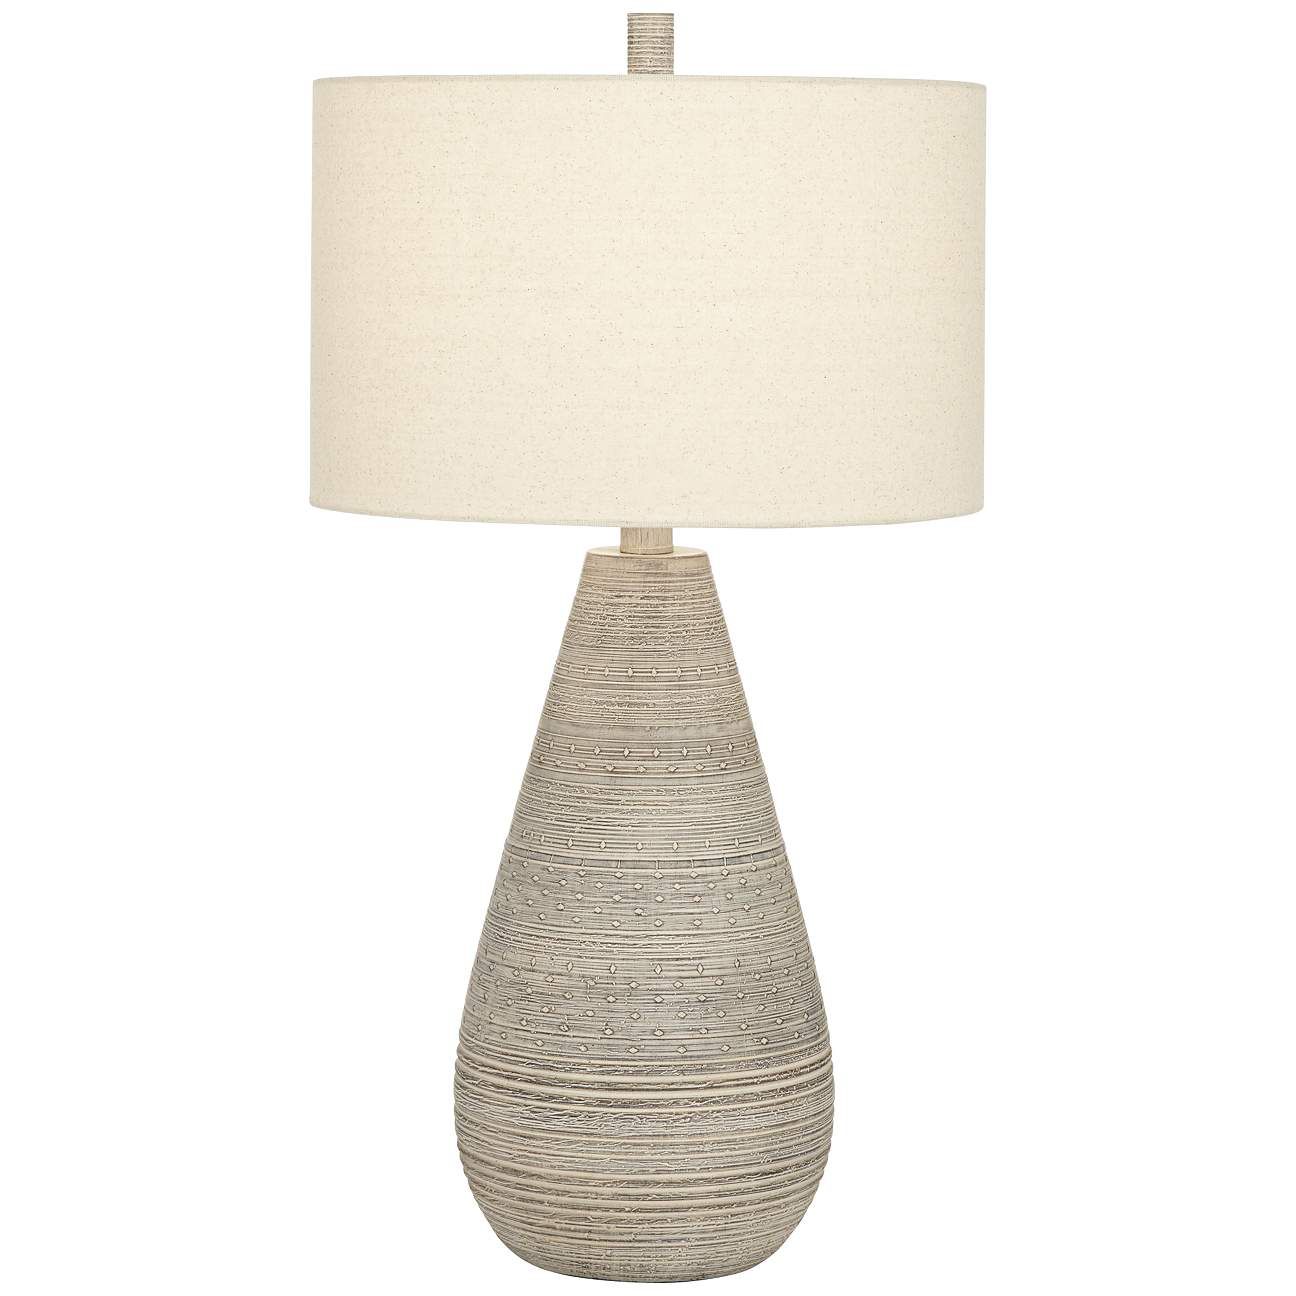 Julio Natural Gray Modern Ceramic Vase Table Lamp | Lamps Plus